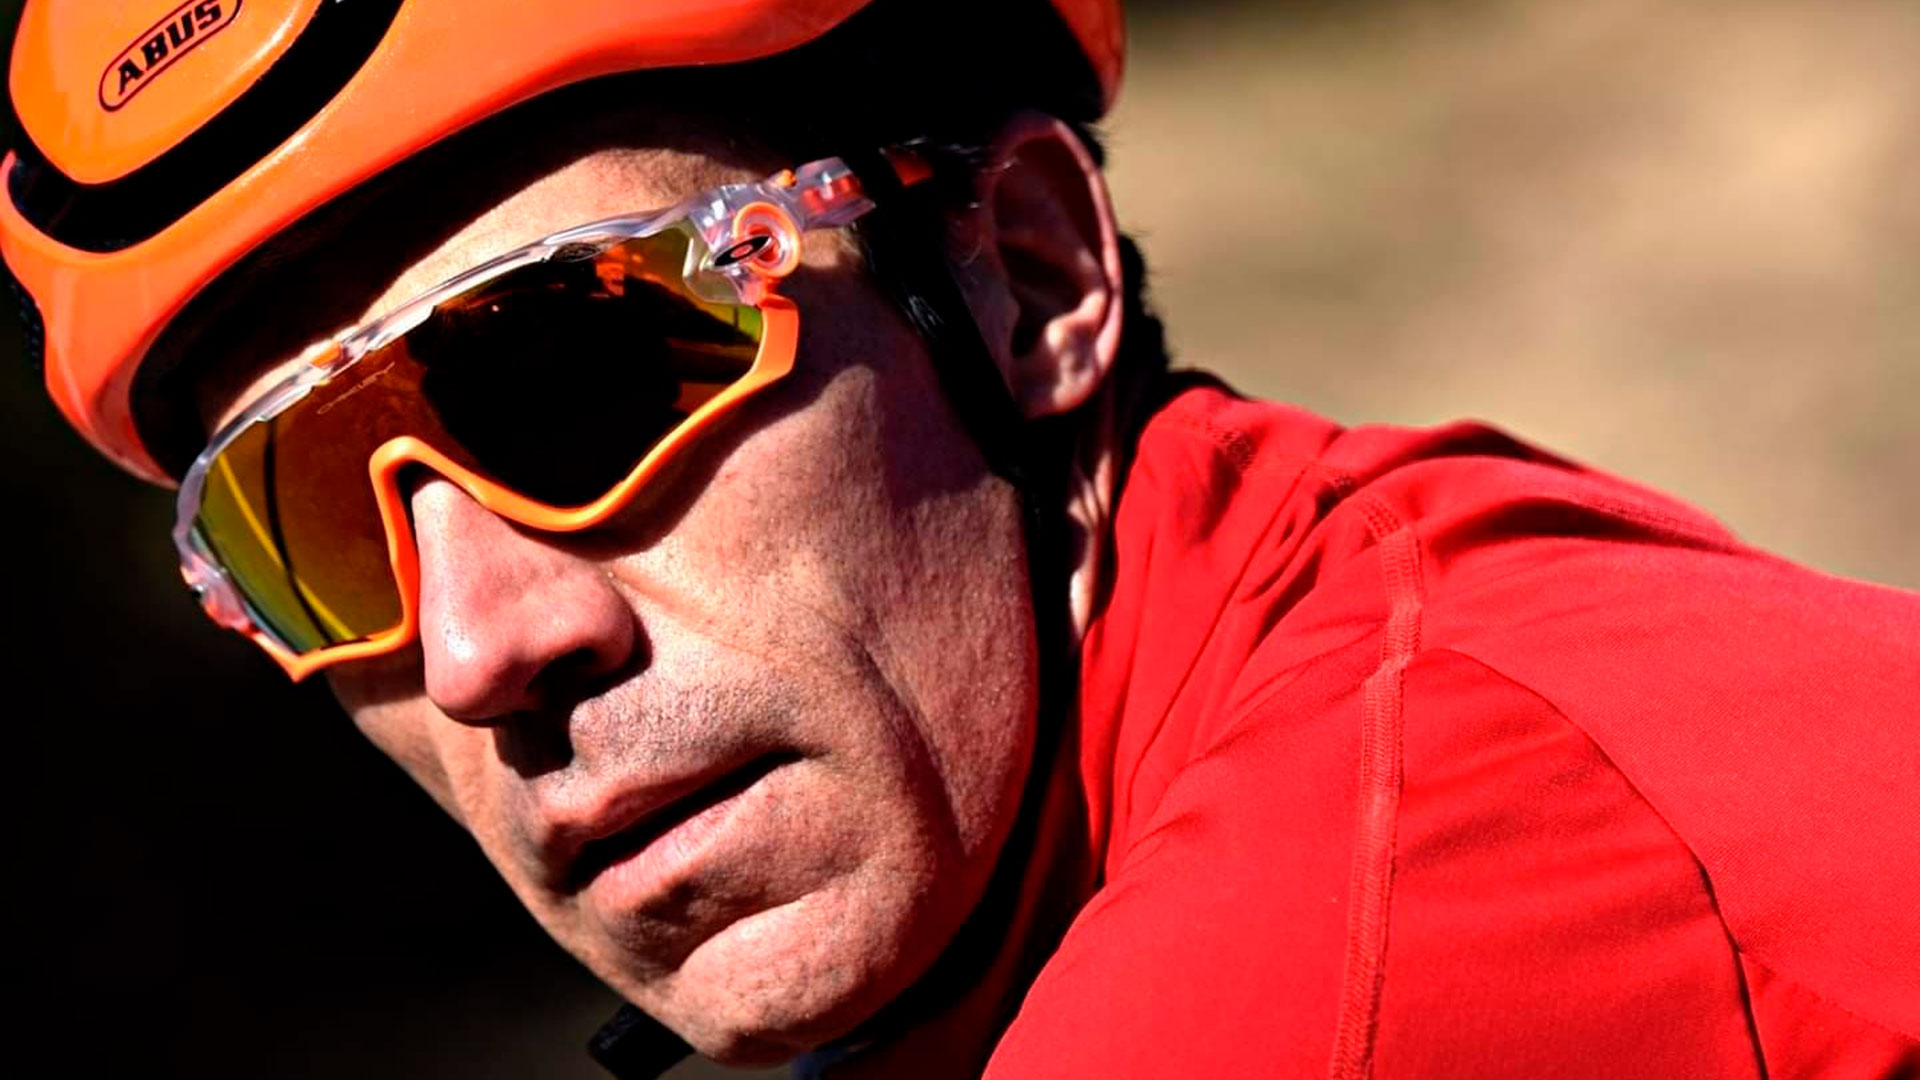 Ramón Arroyo, el “Ironman” que compite con esclerosis múltiple: “Le di la espalda a la enfermedad por 3 años y hacer deporte me cambió la vida”